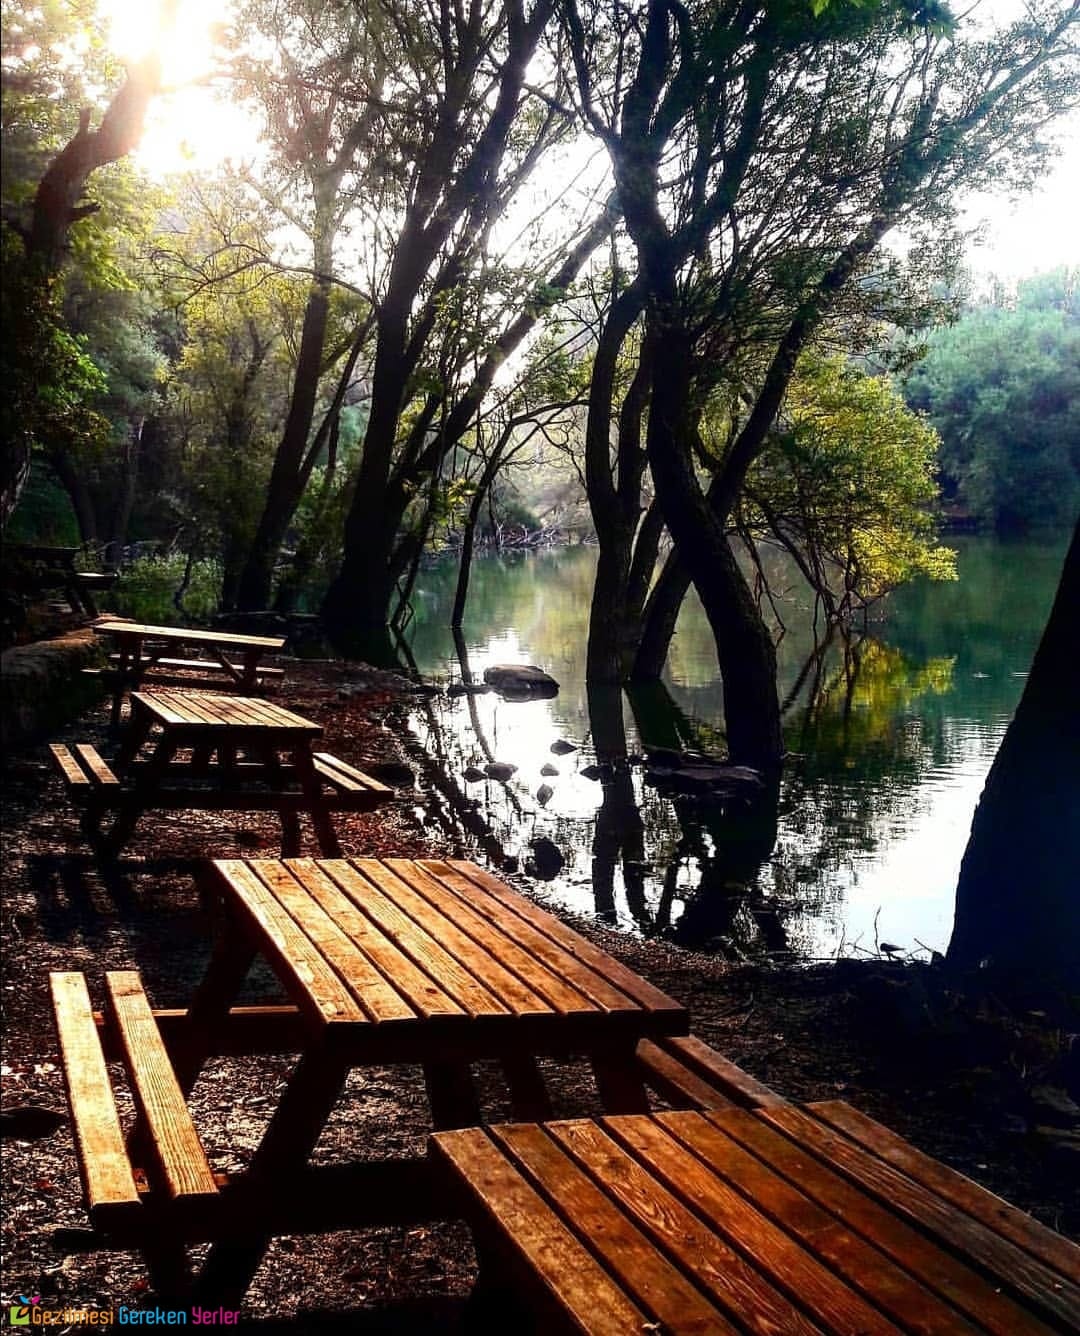 İzmir Karagöl Tabiat Parkı Giriş Ücreti ve Ziyaret Saatleri